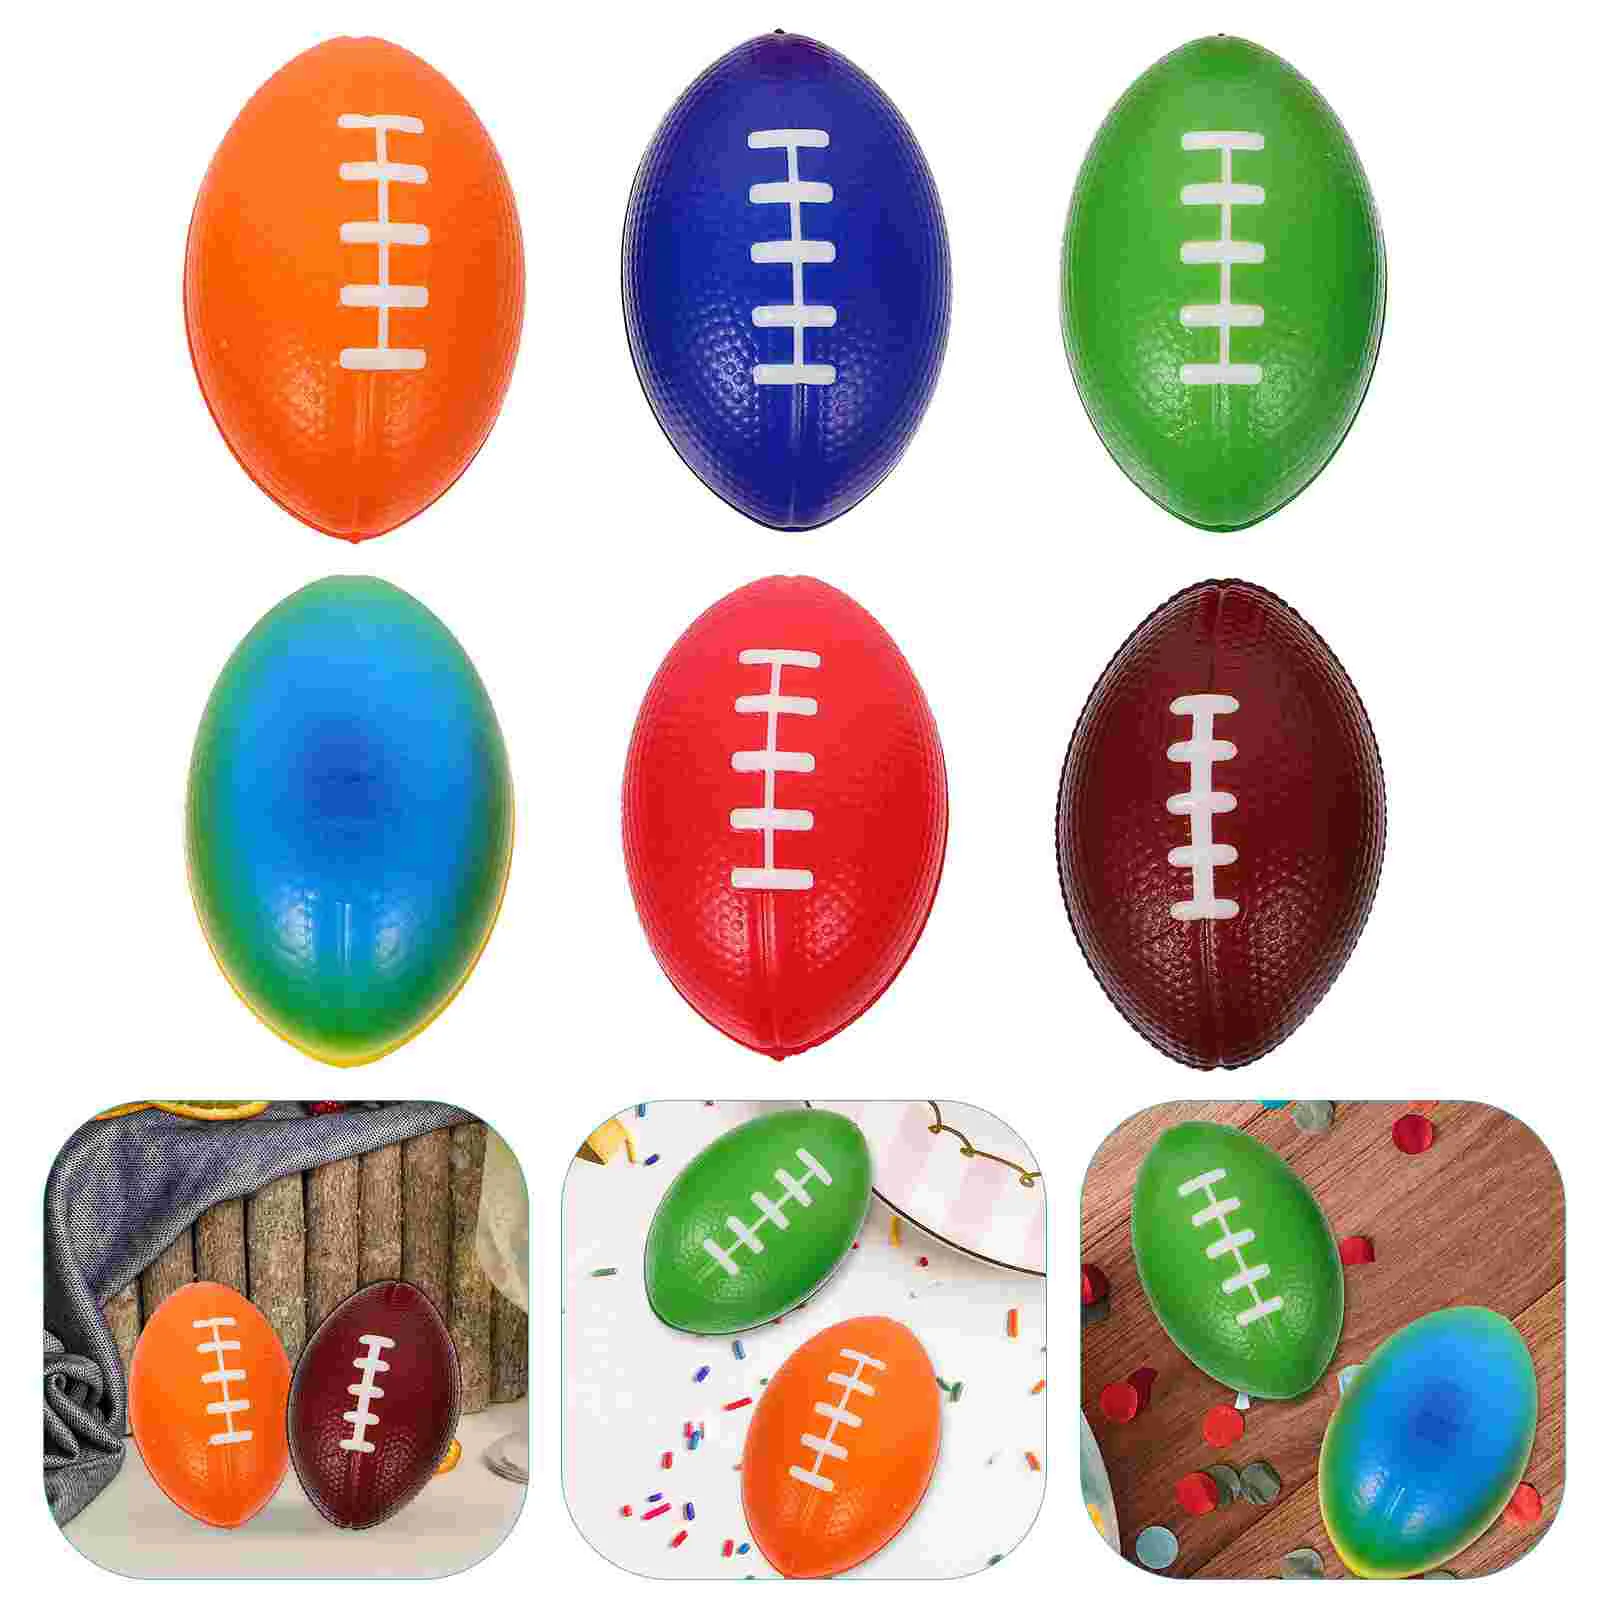 

6 шт., мяч для снятия стресса, украшение, искусственная кожа, спортивный мини-мяч (смешанные цвета), 6 маленьких мячей для регби